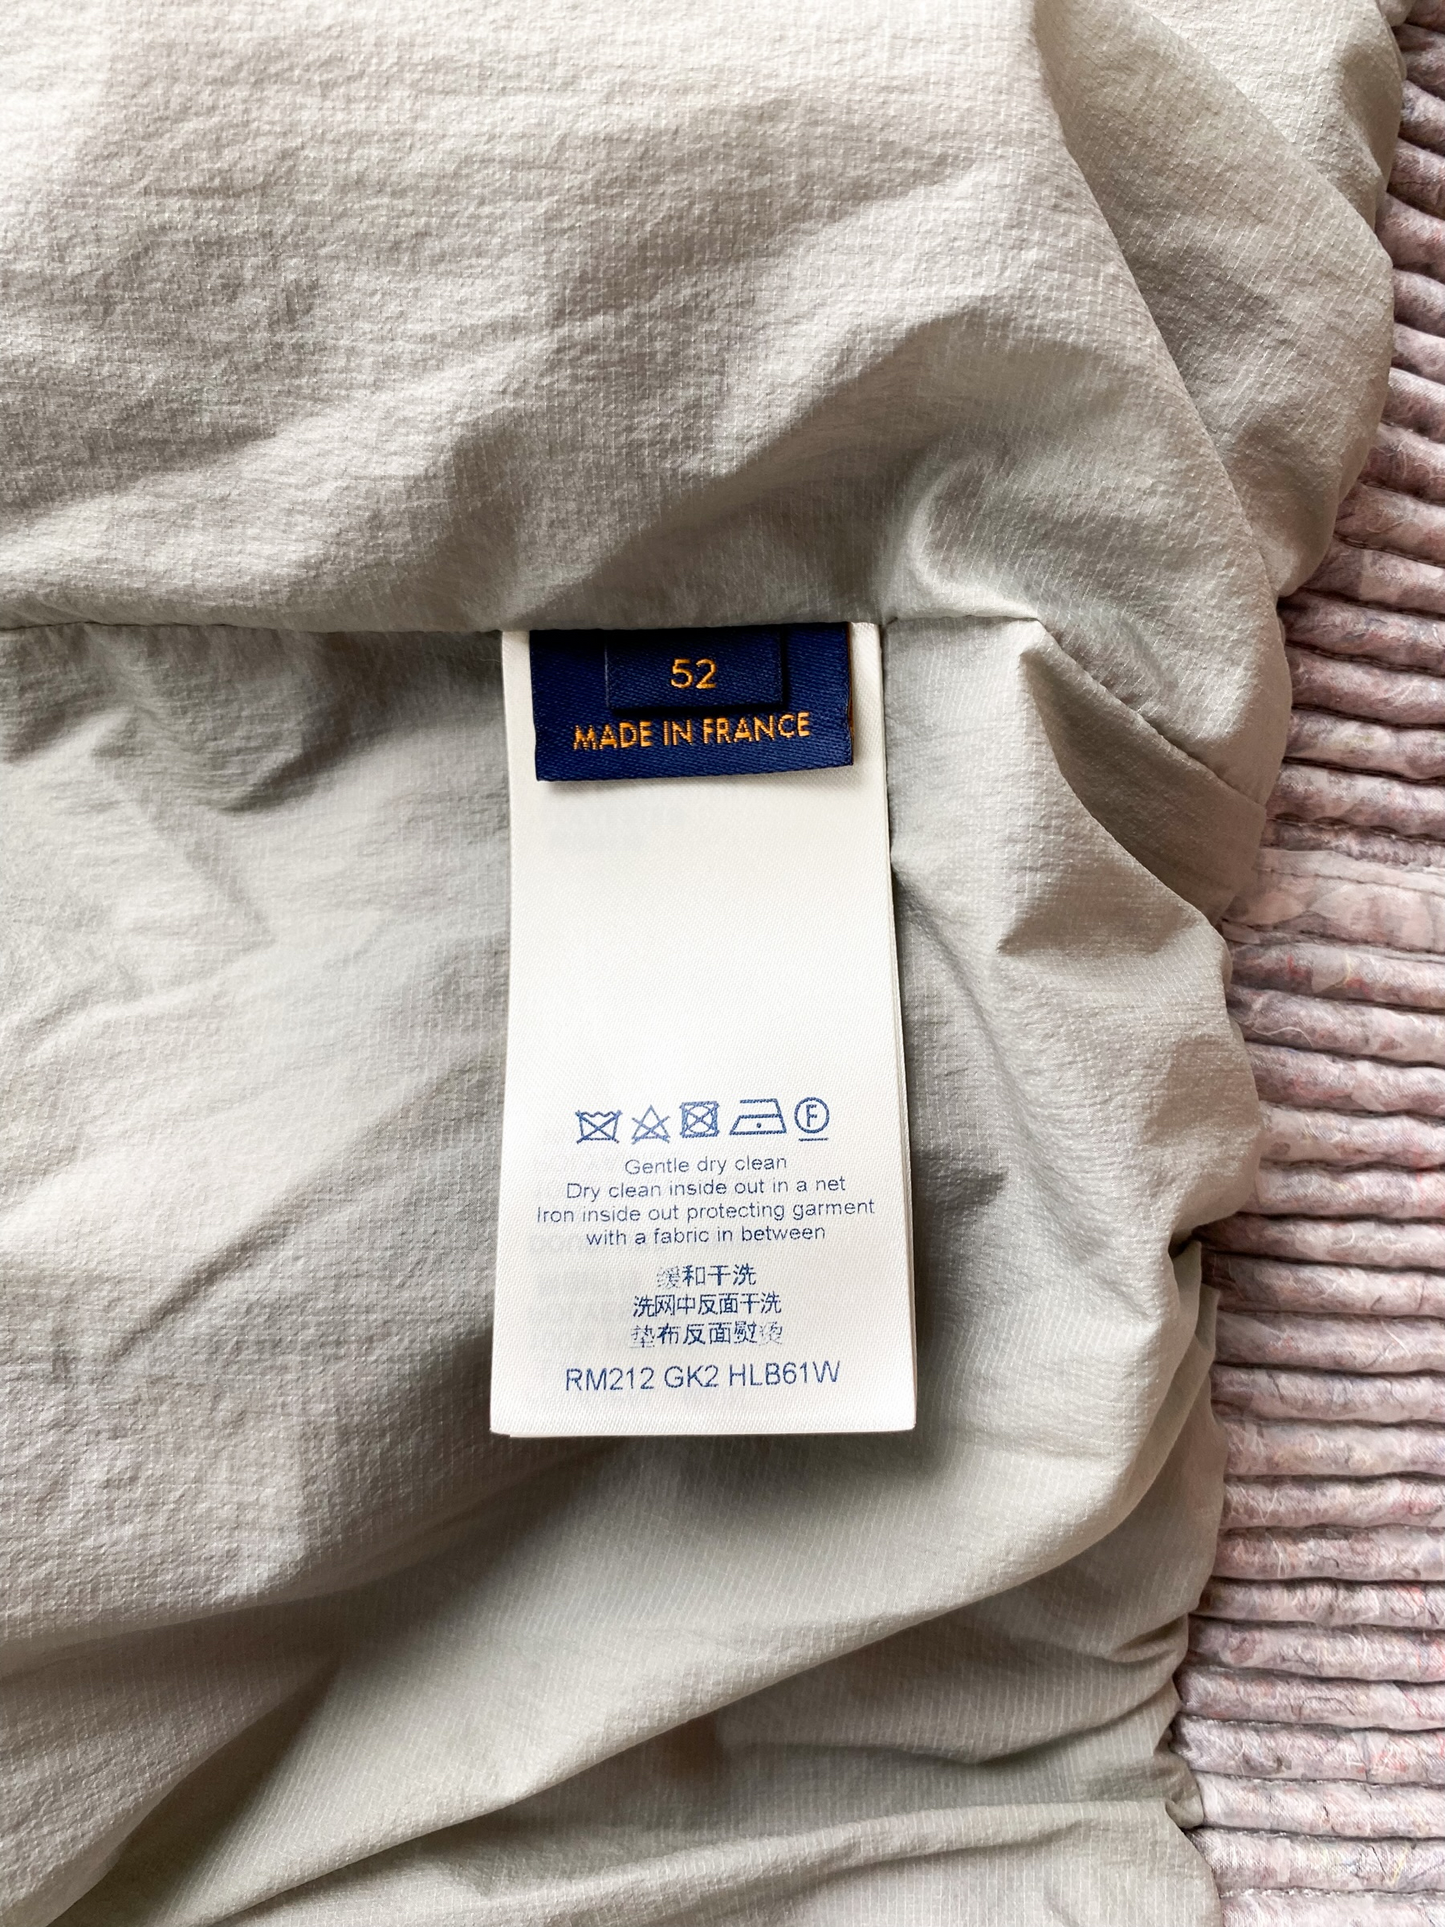 Louis Vuitton Grey Organza Monogram Mesh Track Jacket – Savonches